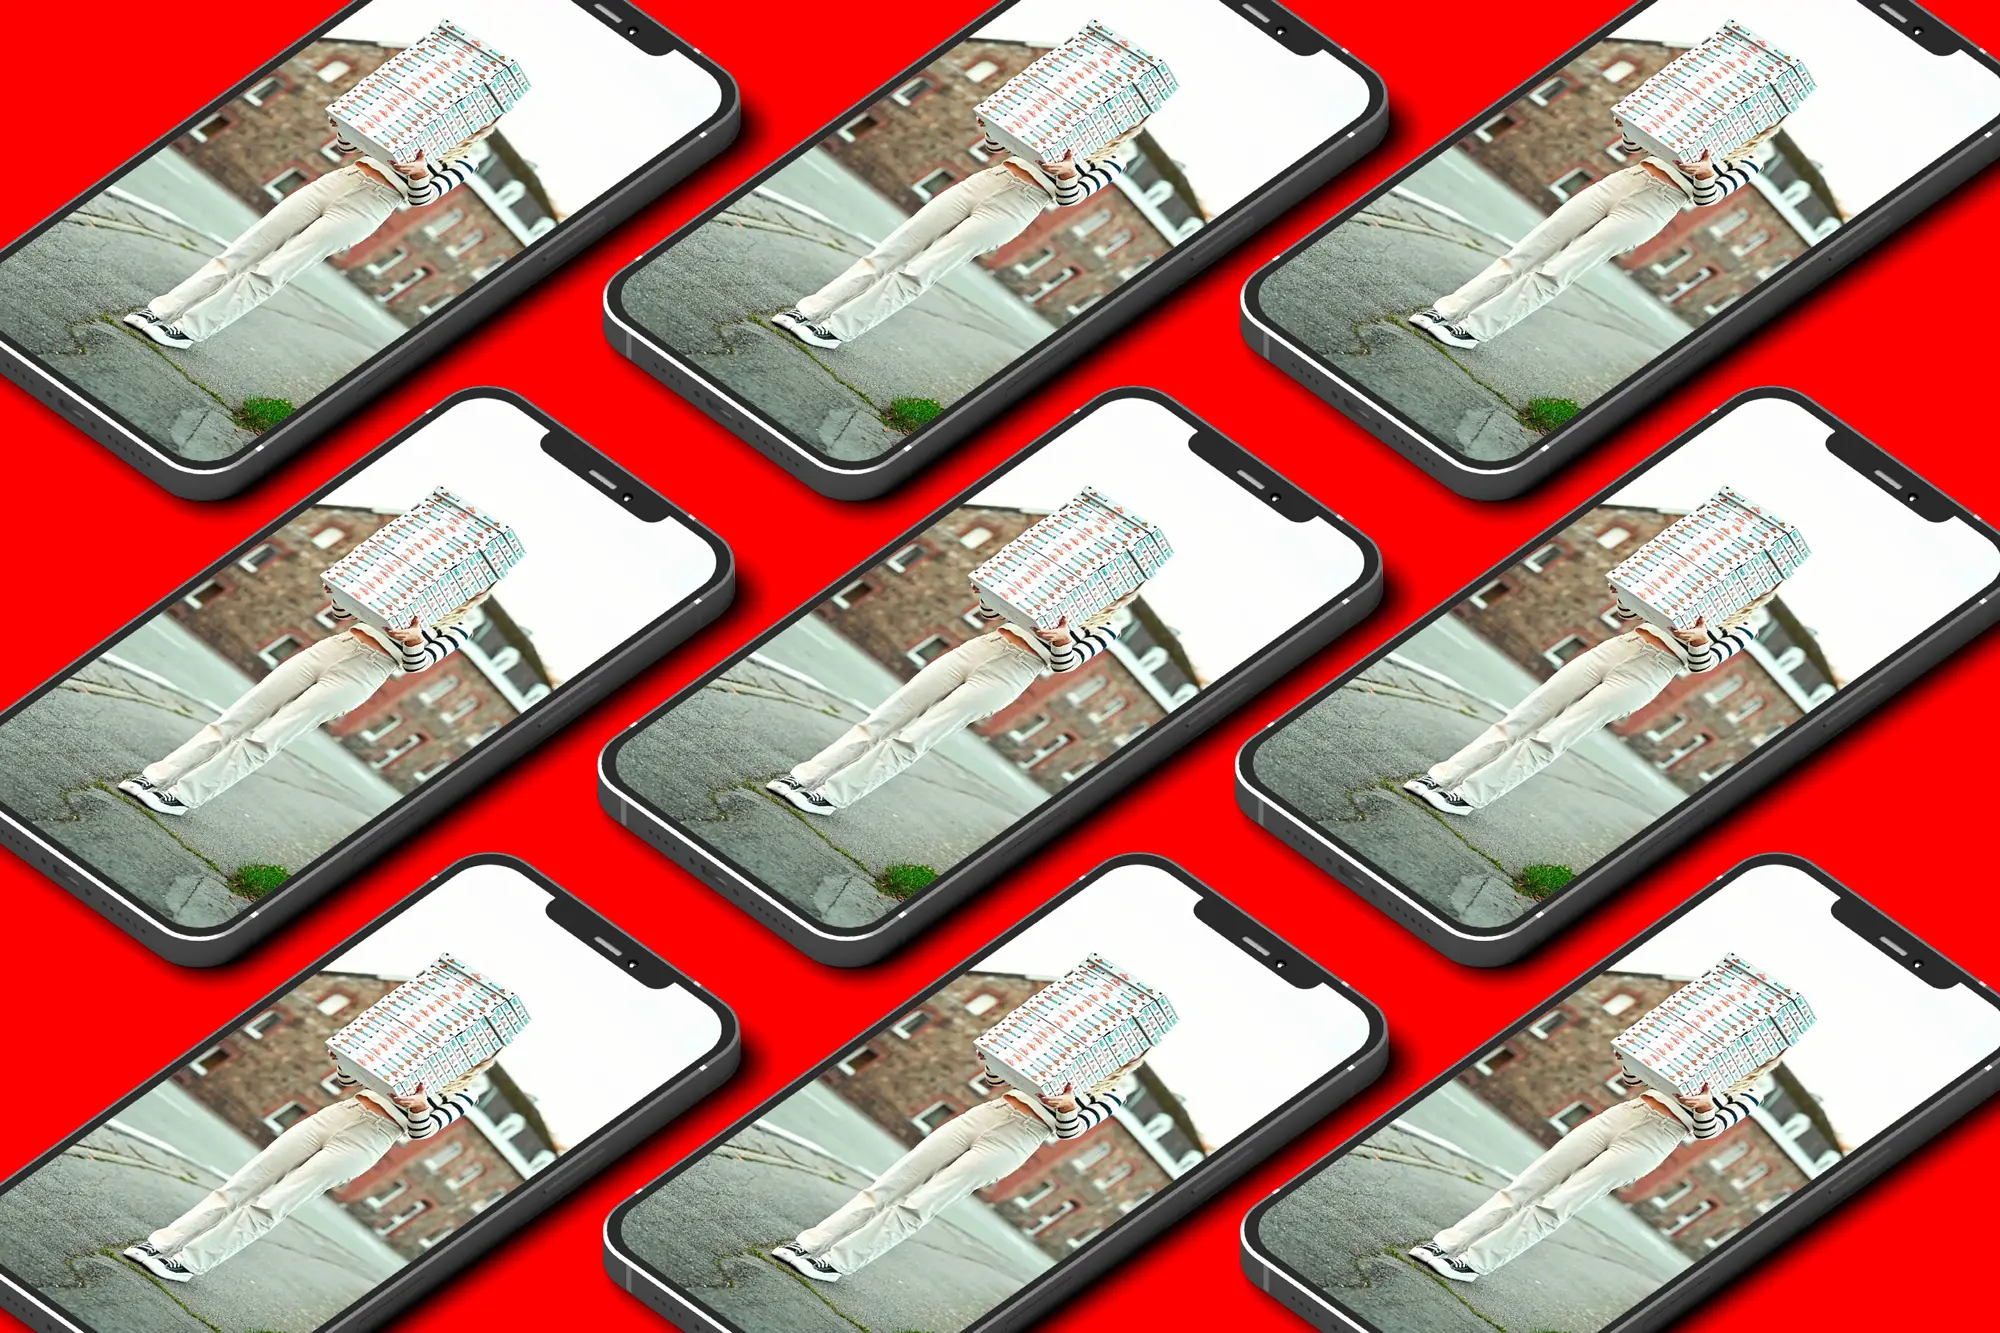 Une photo de cartons de pizza intégré dans des mockups d'iphone pour Acquarossa